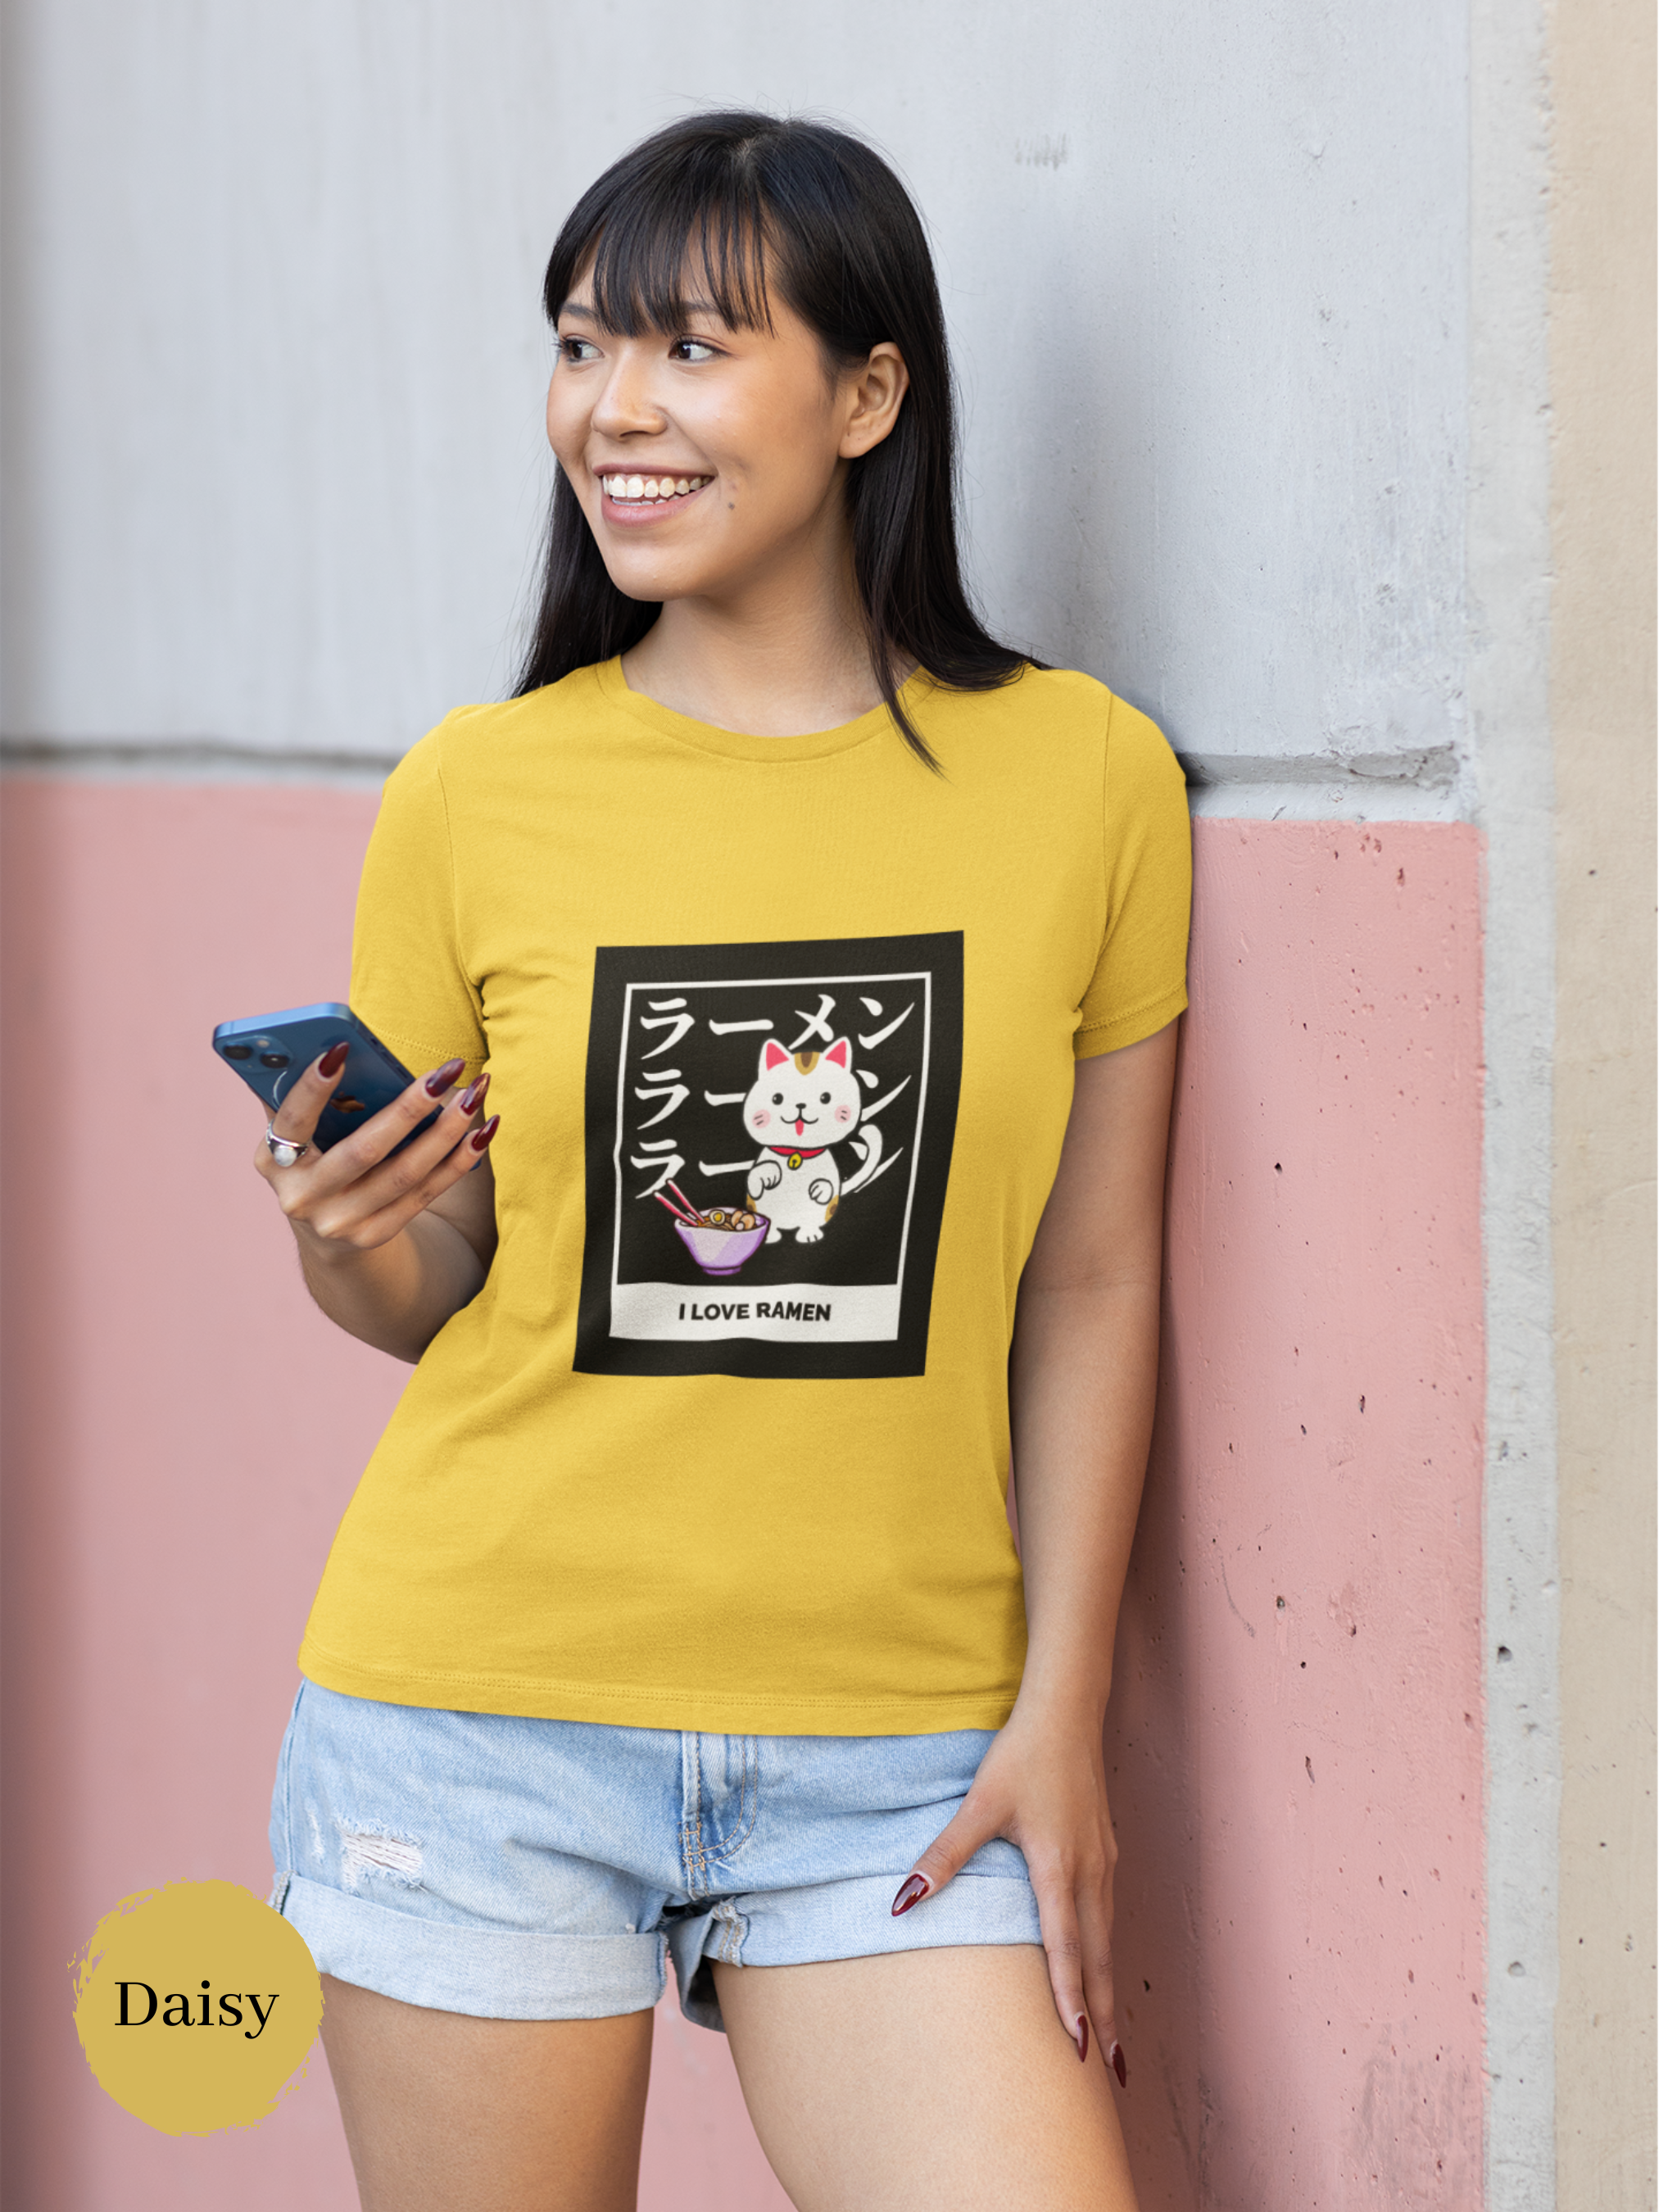 Ramen T-shirt: Lucky Cat I Love Ramen with Maneki Neko Illustration - Japanese Foodie Shirt with Ramen Art